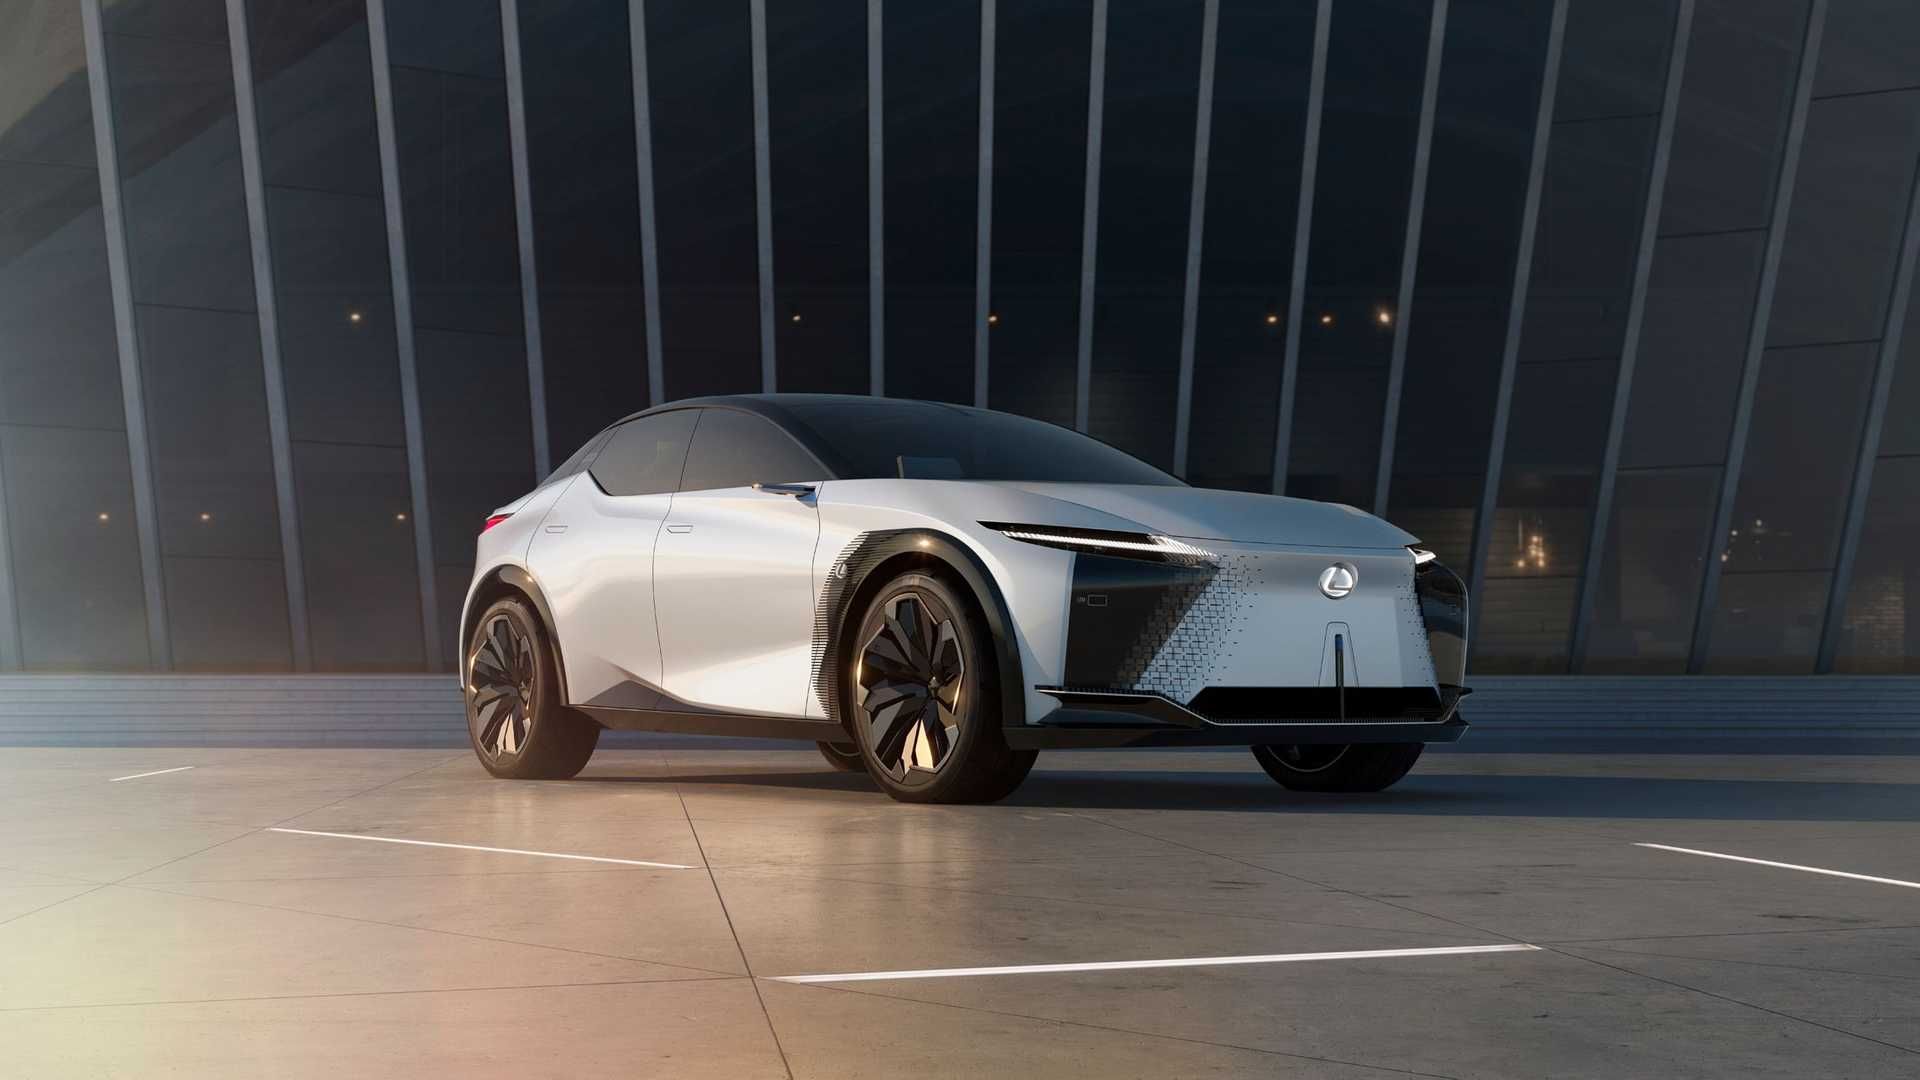 خودروی مفهومی و برقی لکسوس / Lexus LF-Z Electrified Concept EV سفید رنگ در کنار ساختمان